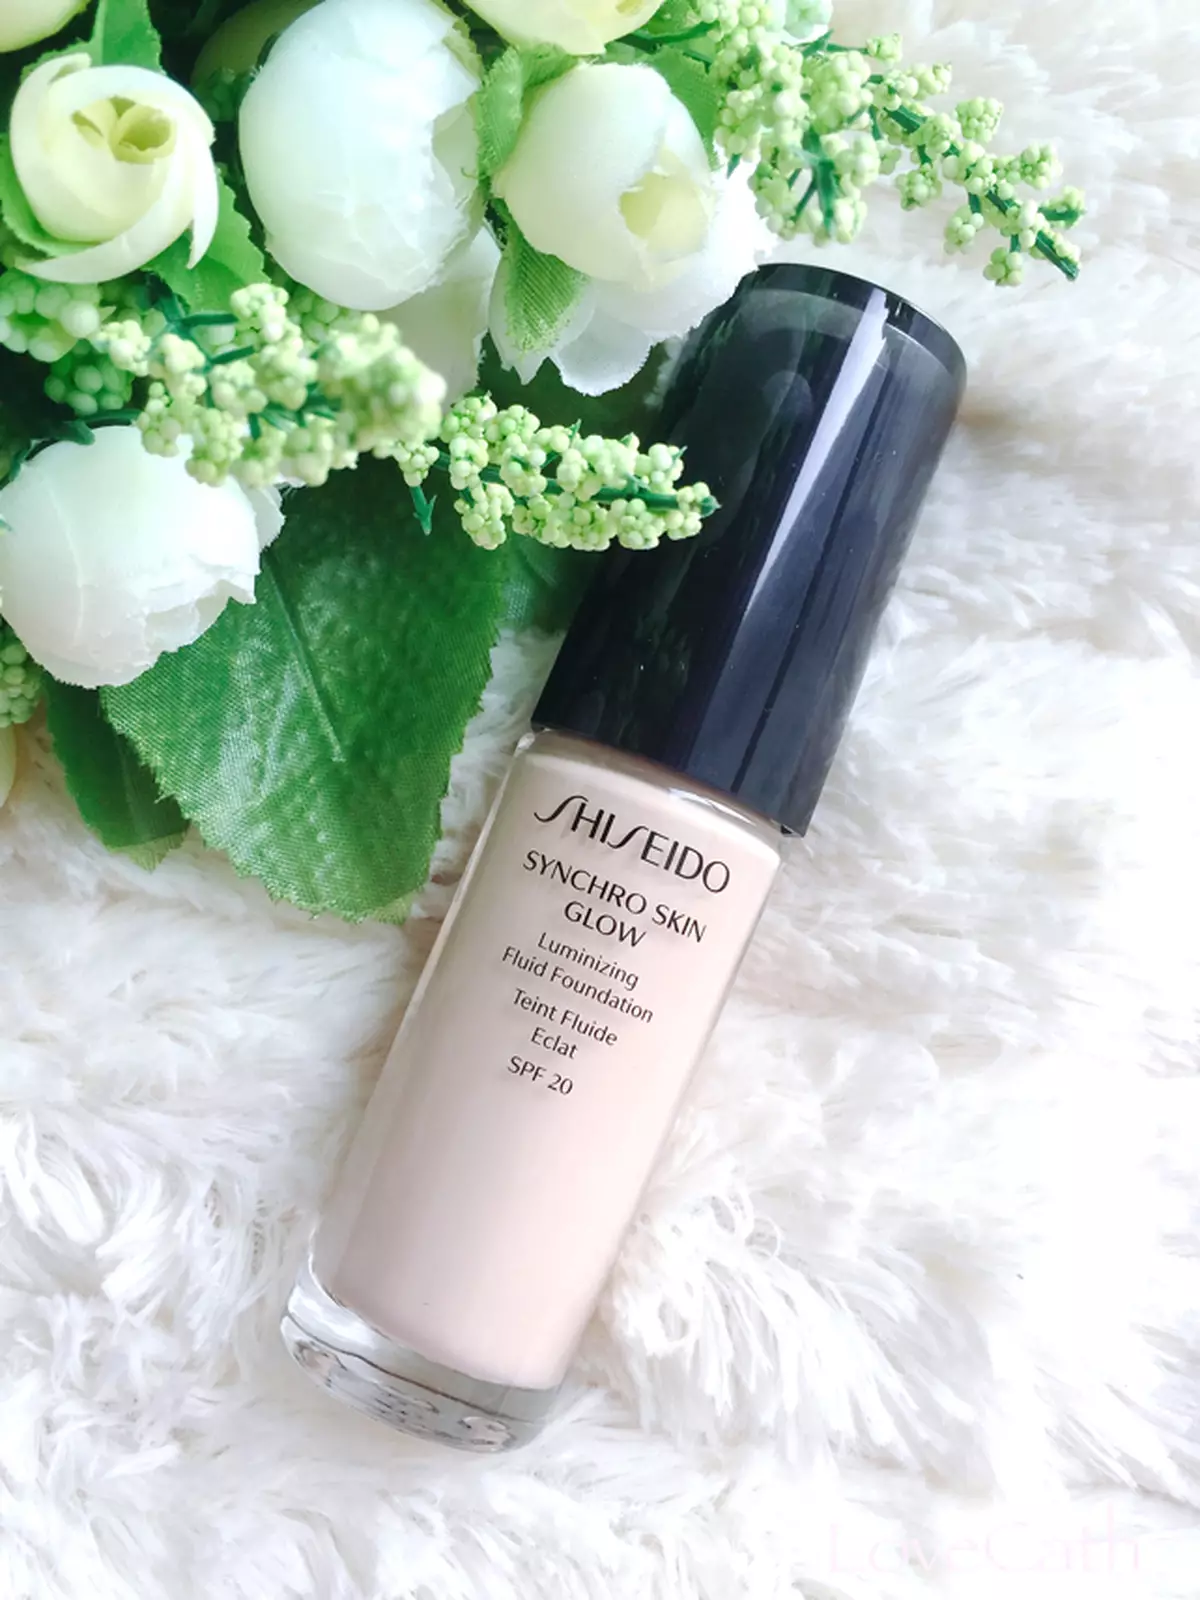 Shiseido 智能感應潤澤粉底。漾造水光美肌